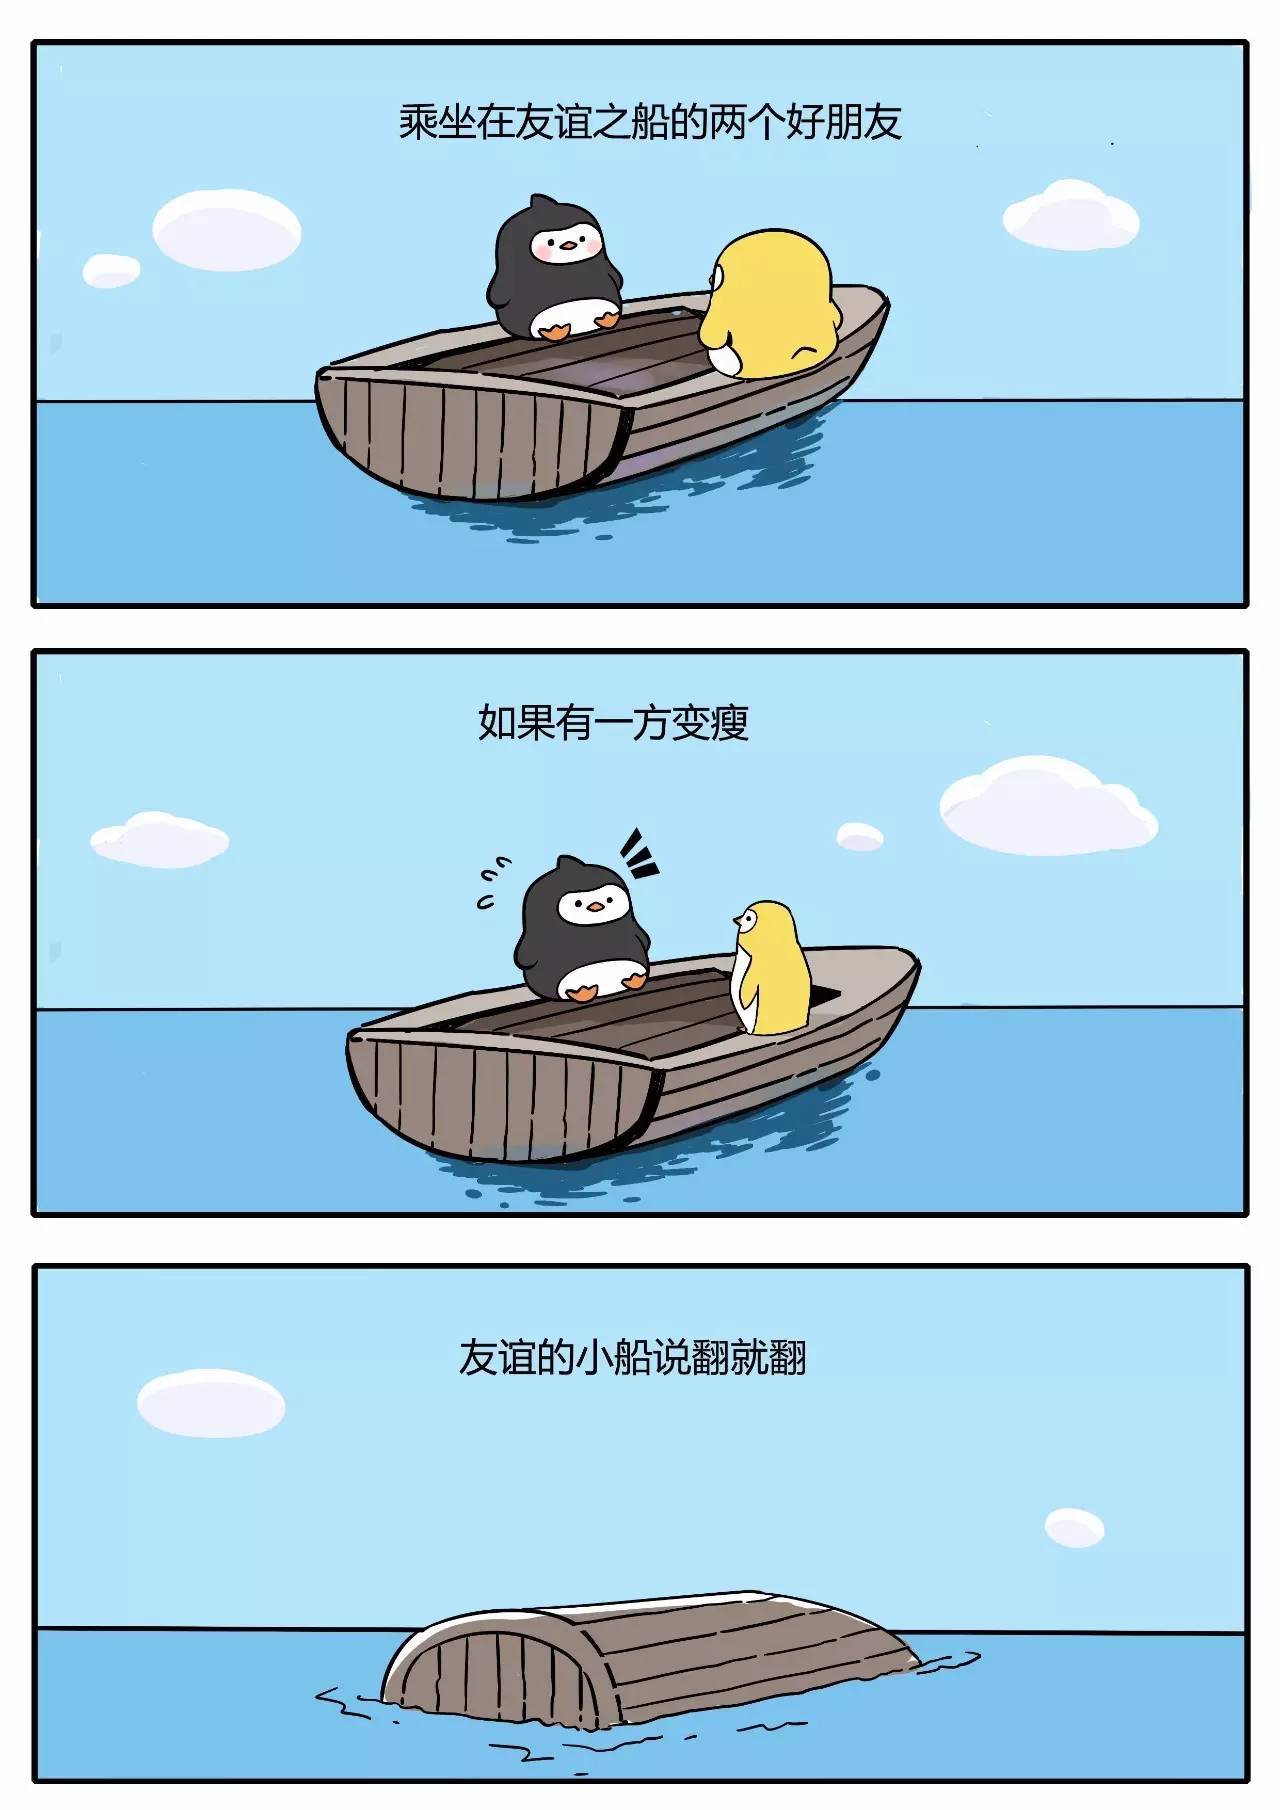 《友谊的小船说翻就翻》原作者喃东尼带着蠢萌小企鹅